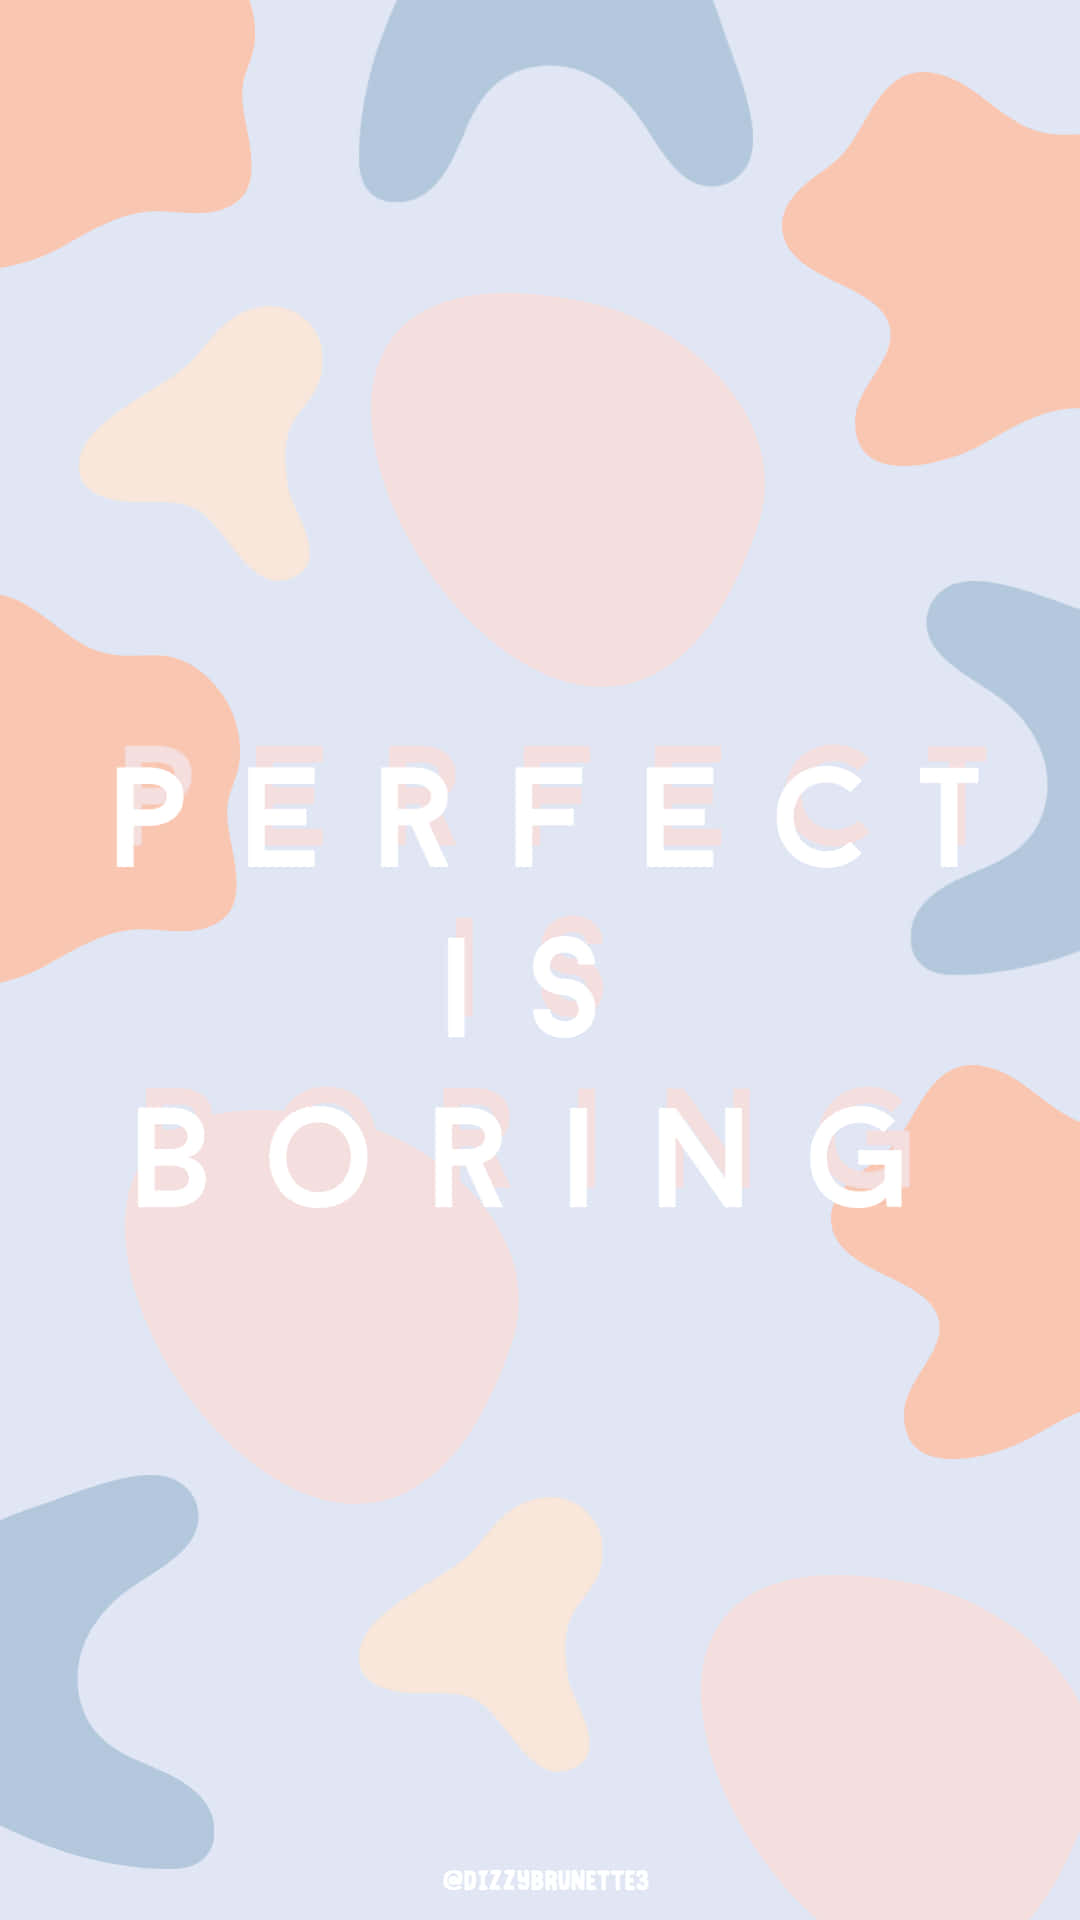 Perfekt er kedeligt - et citat fra Adam Sandler Wallpaper